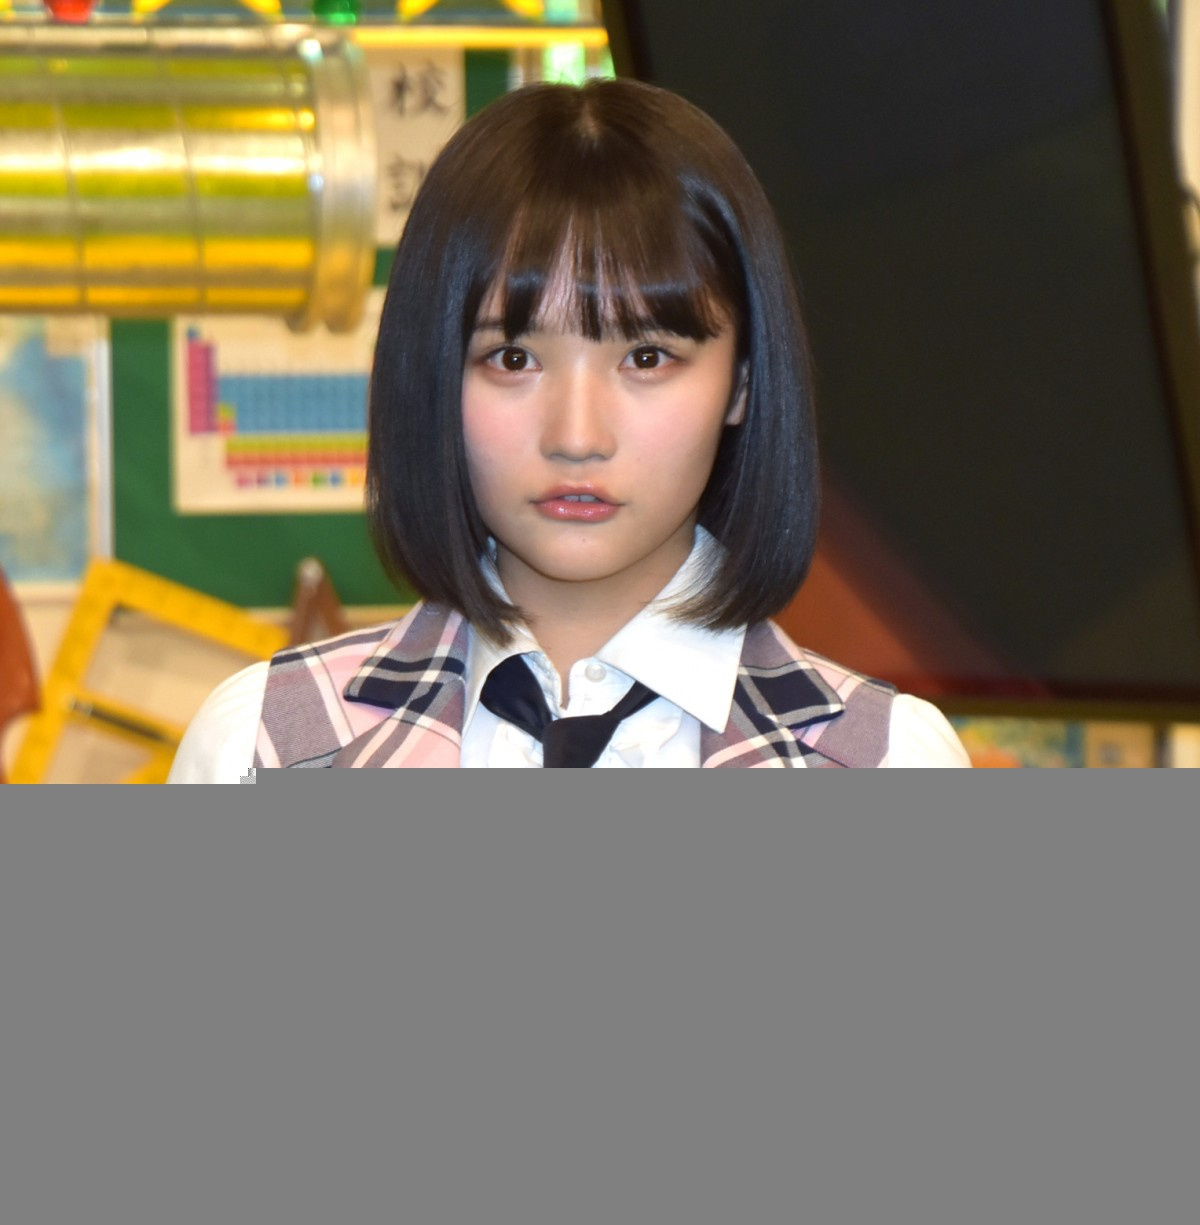 沢口靖子 榊マリコとして声優出演 クレヨンしんちゃん で 科捜研の女 だゾ oricon news